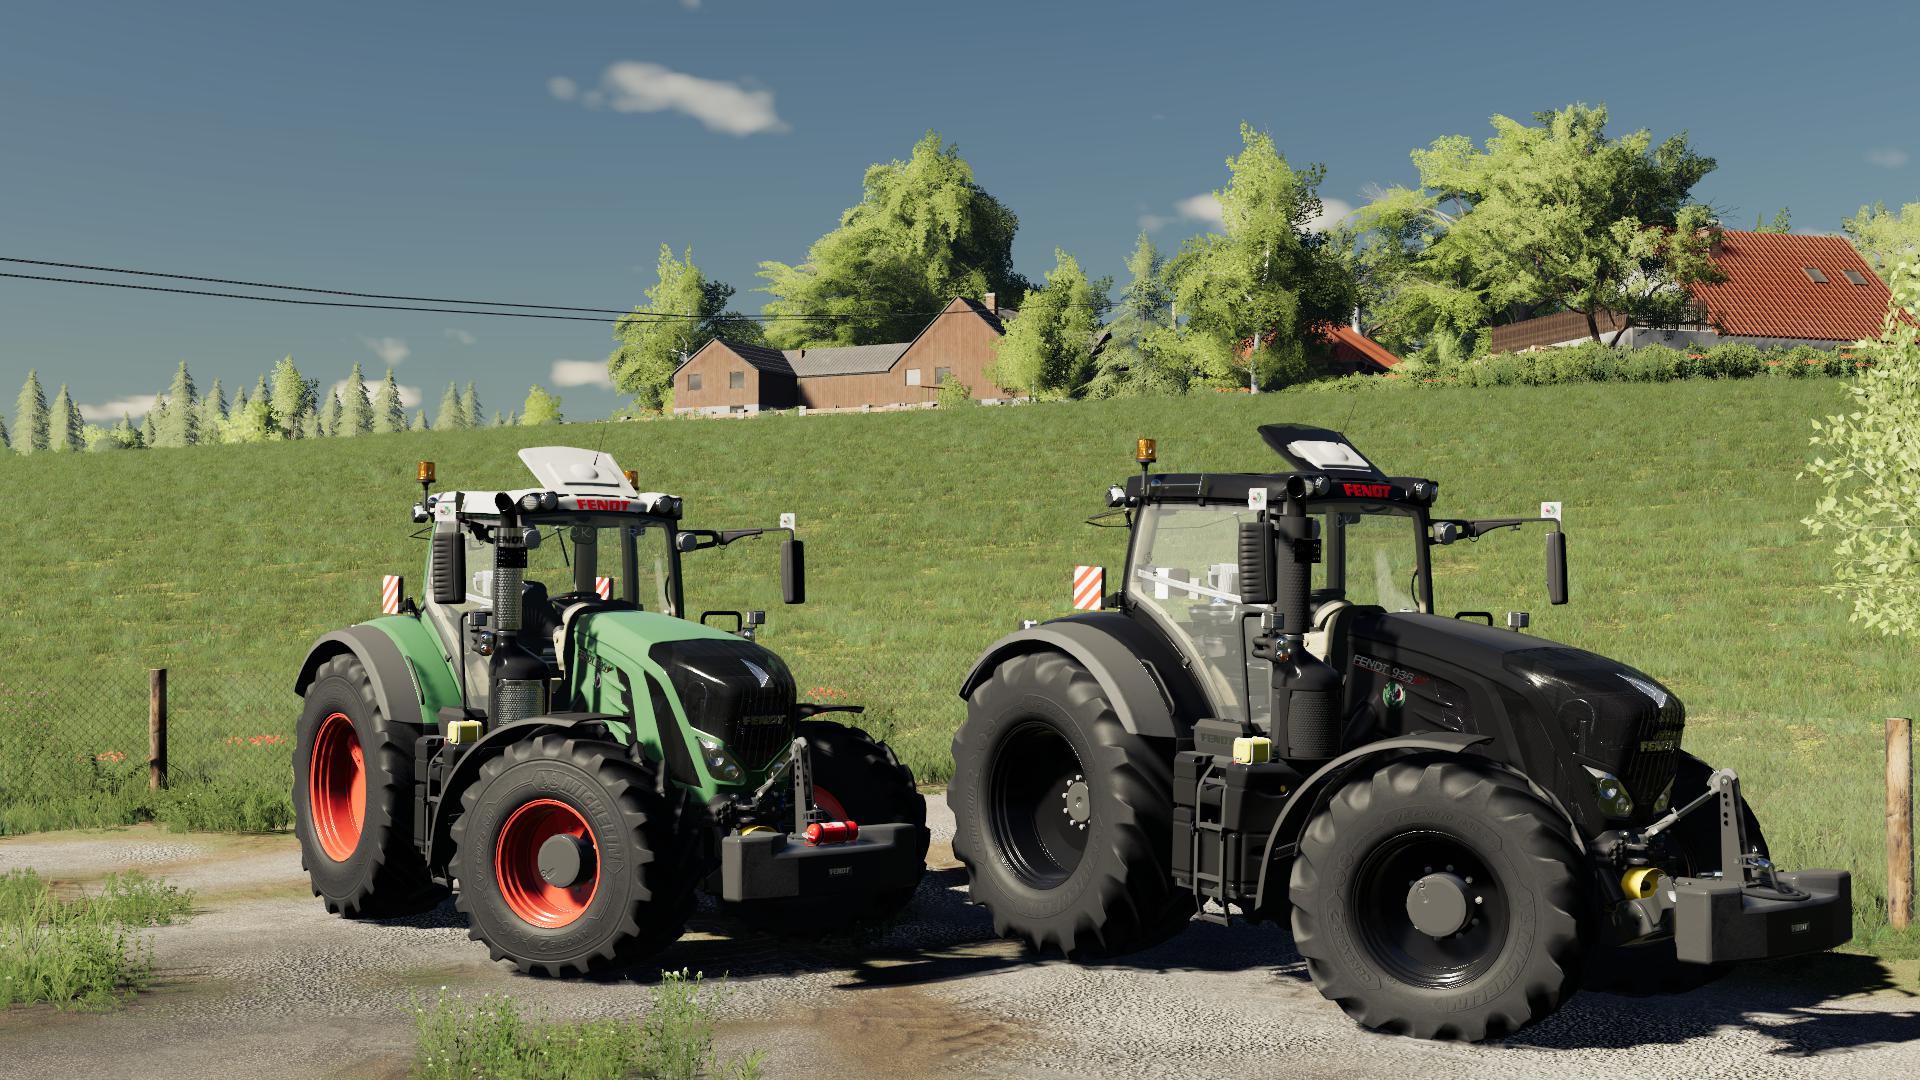 Fendt 900 Vario S4 V1000 Fs19 Farming Simulator 19 Mod Fs19 Mod 9972